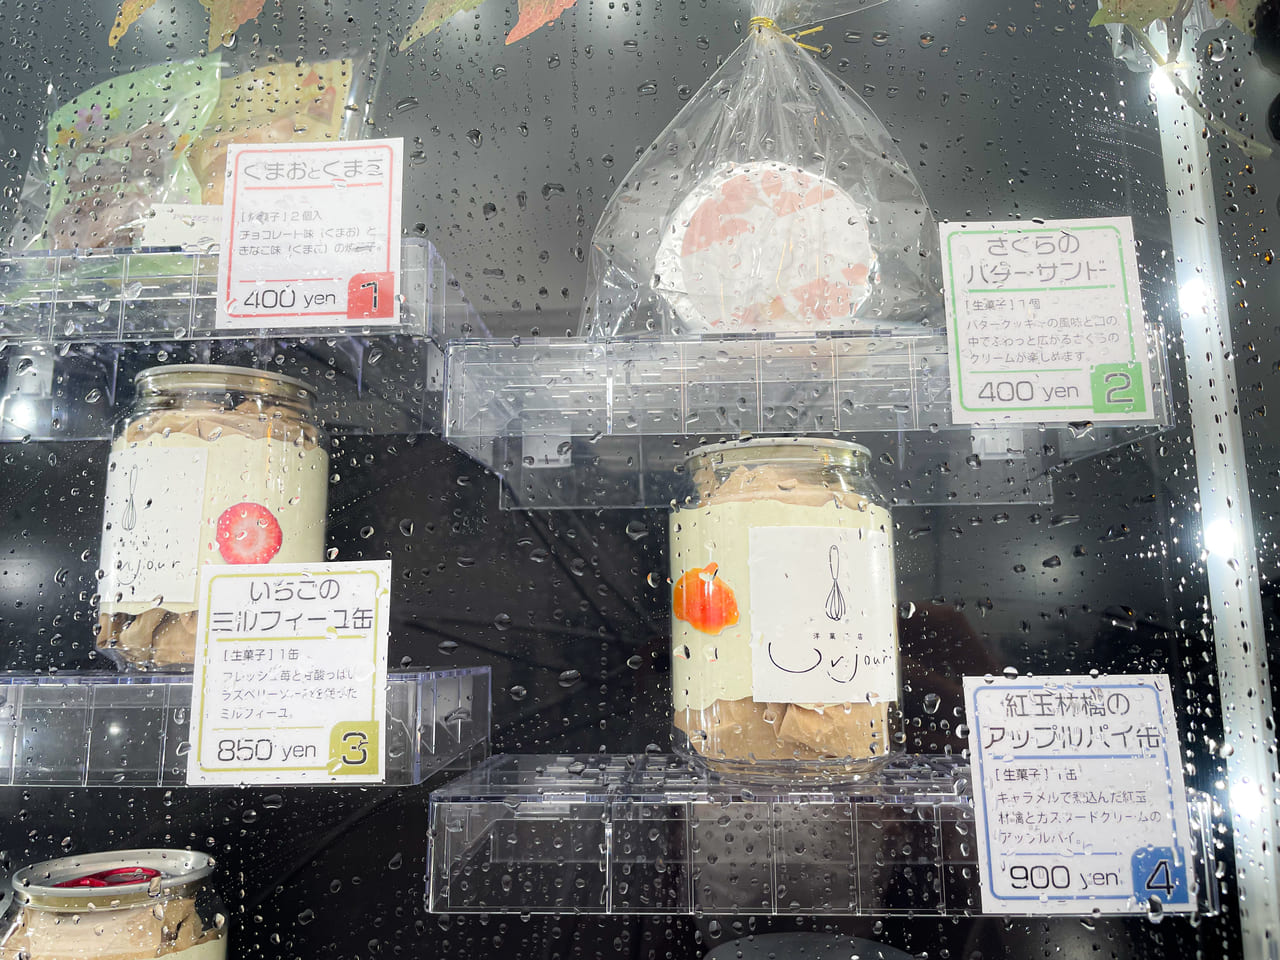 愛知県 何を販売しているの 岩倉市のケーキ屋さん アンジュール に設置されている話題の自販機を調査 号外net 小牧市 犬山市